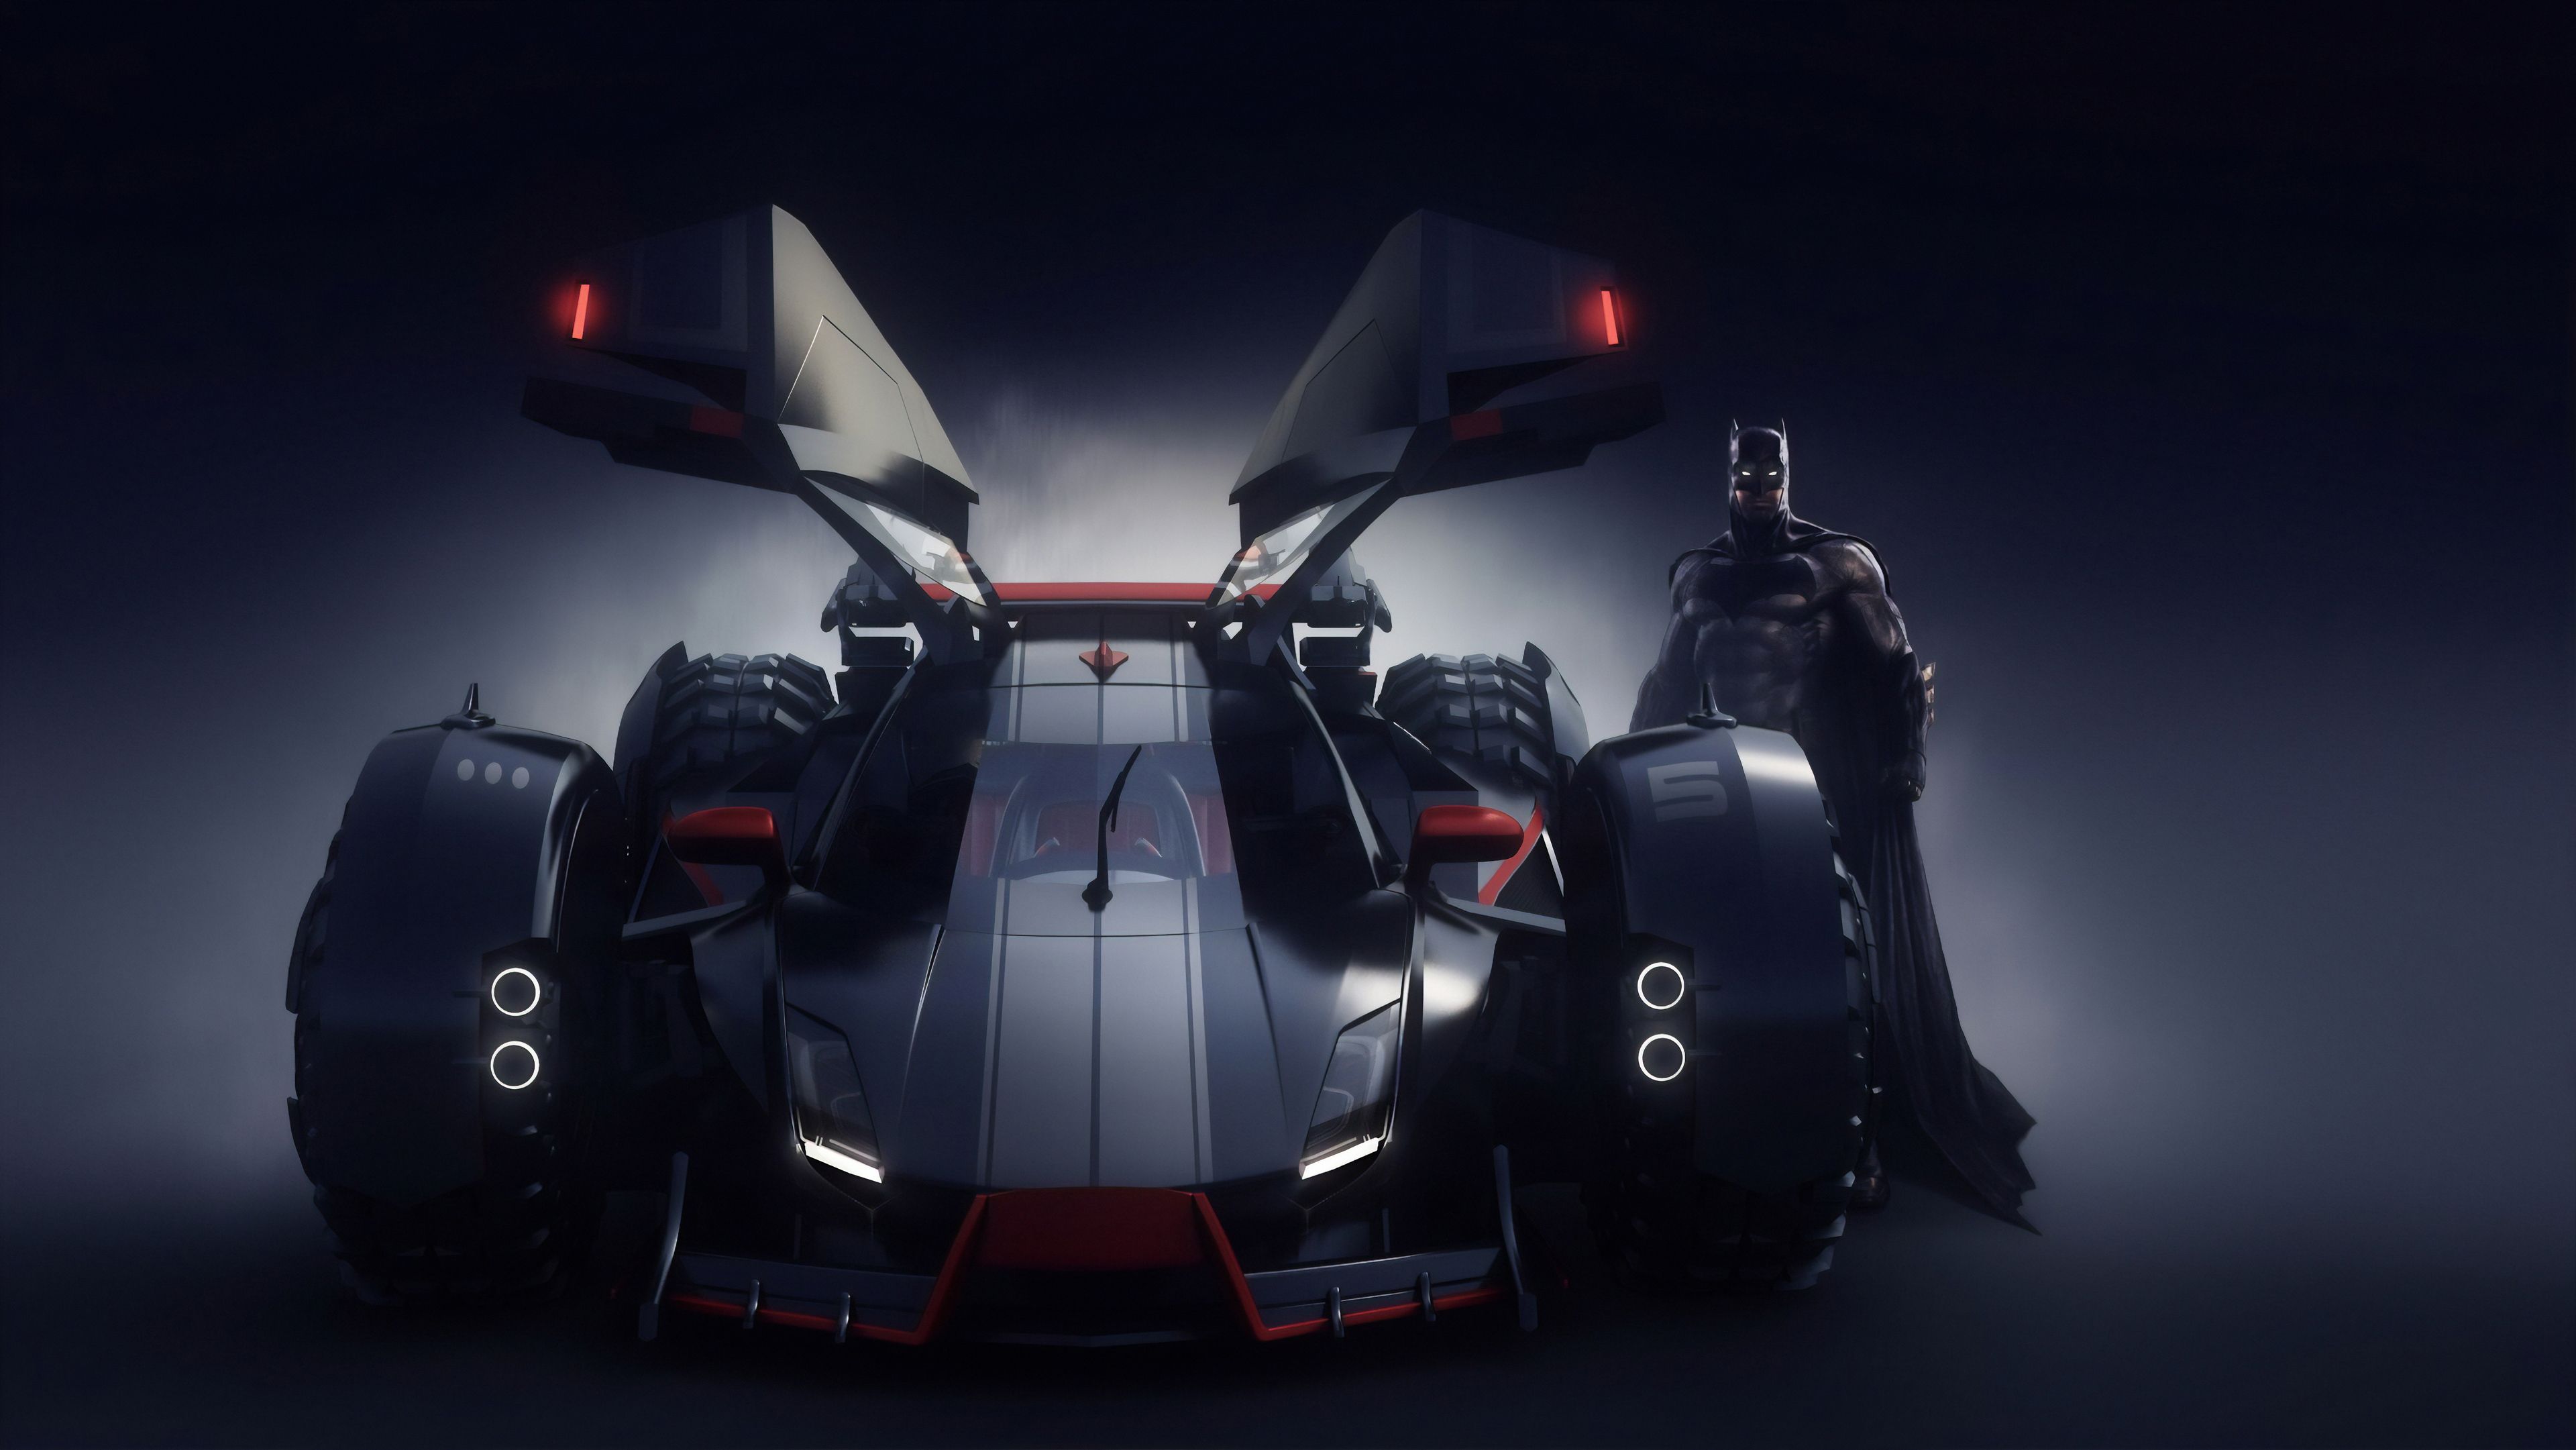 Batman Batmobile 4k, HD Superheroes, 4k Wallpaper, Image